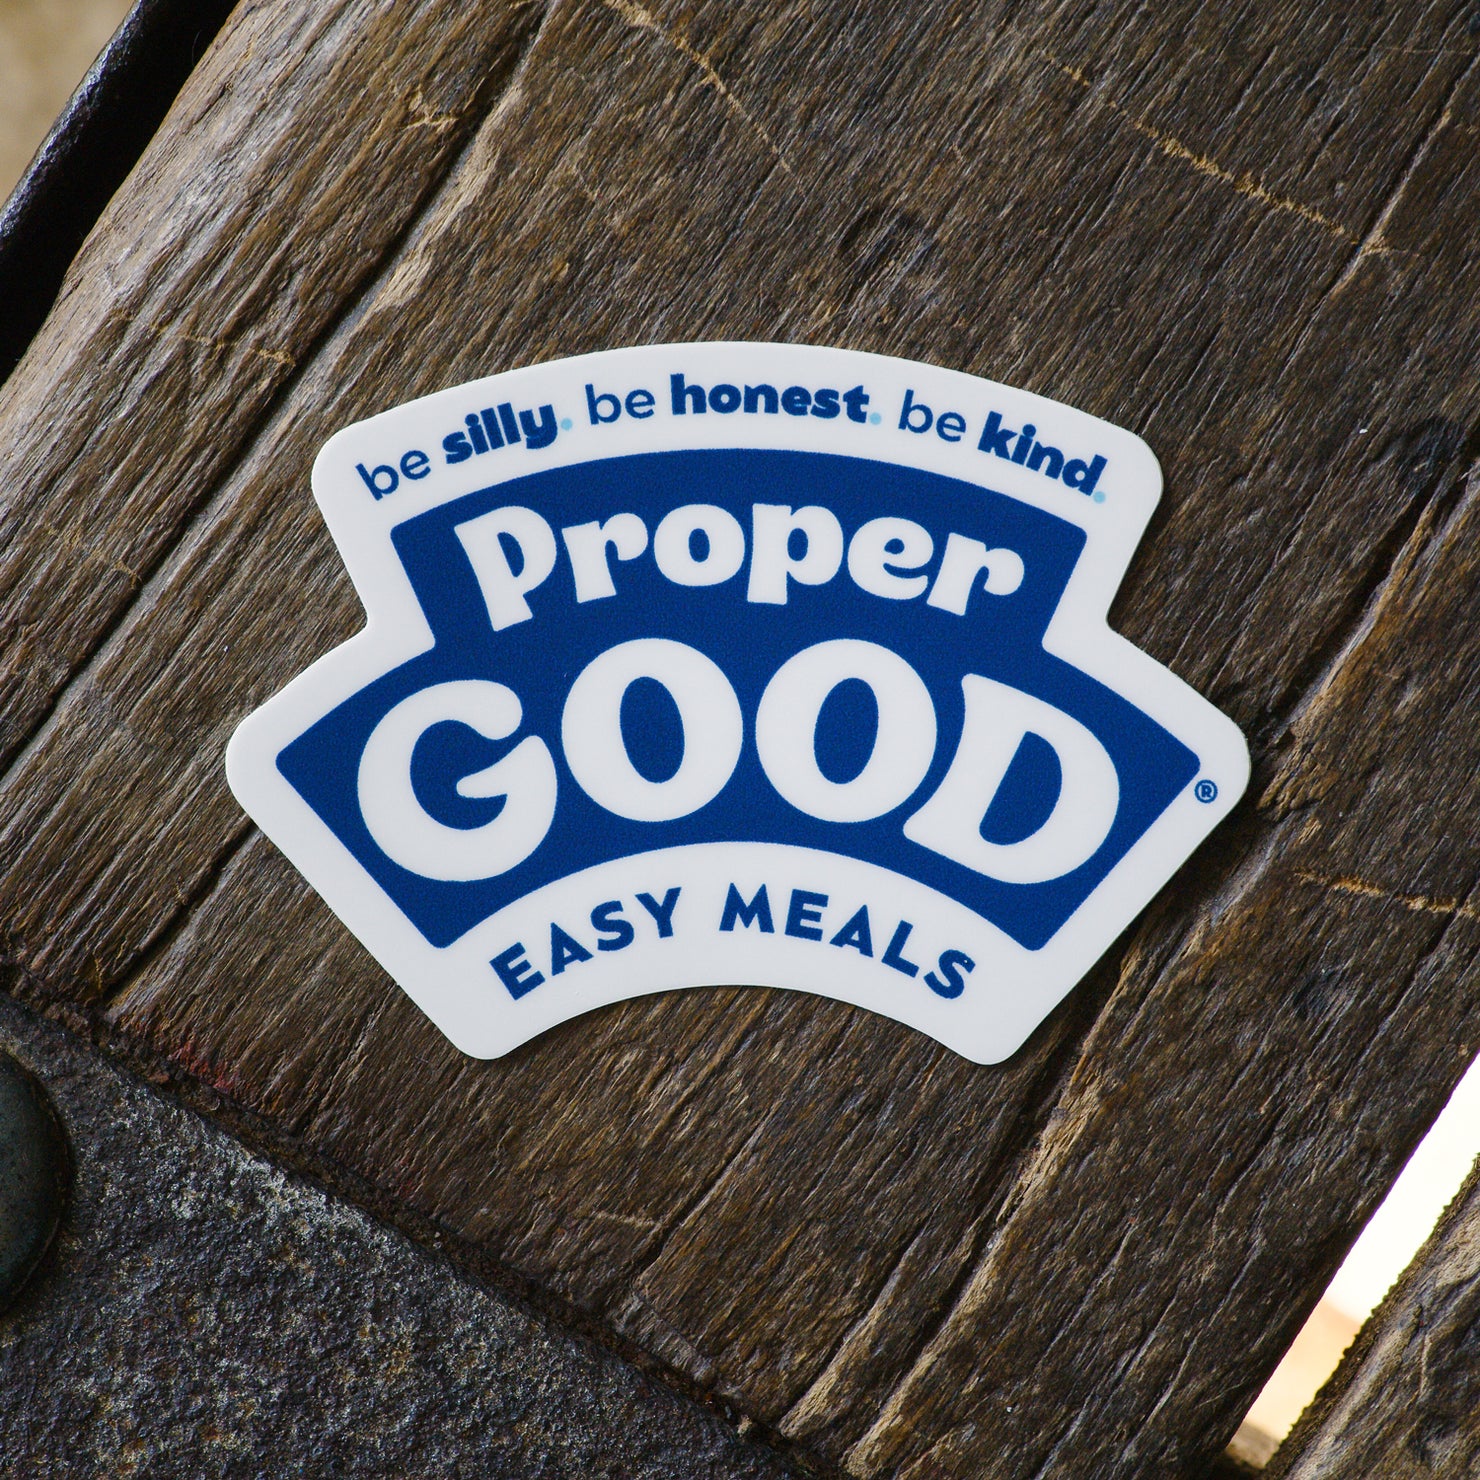 Proper Good Easy Meals Sticker on Wood - Eat Proper Good